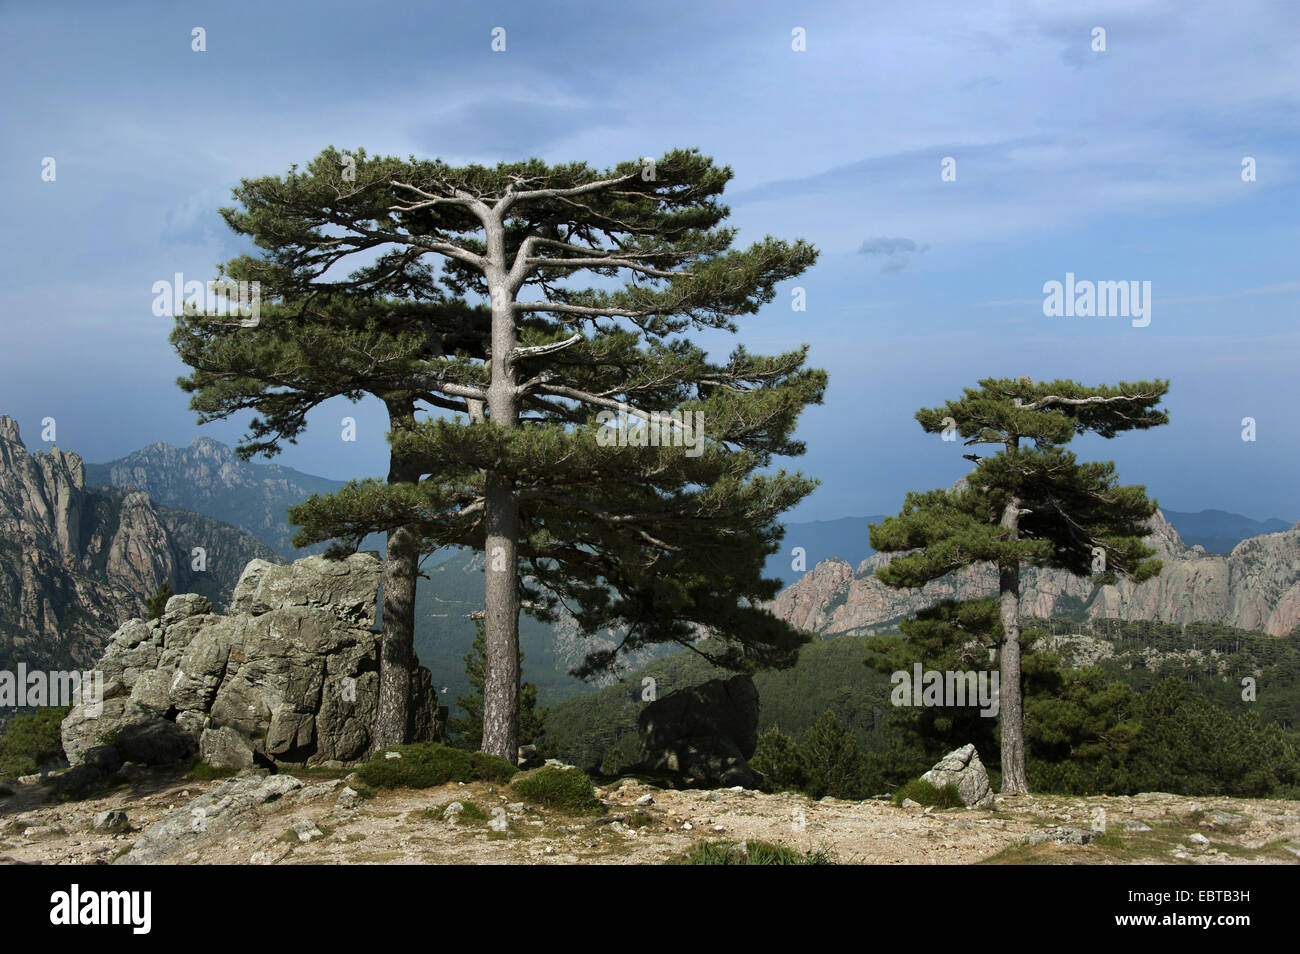 Le pin noir d'Europe, mélèze, Pin noir, pin laricio (Pinus nigra), au Col de Bavella, France, Corse, Col de Bavella Banque D'Images